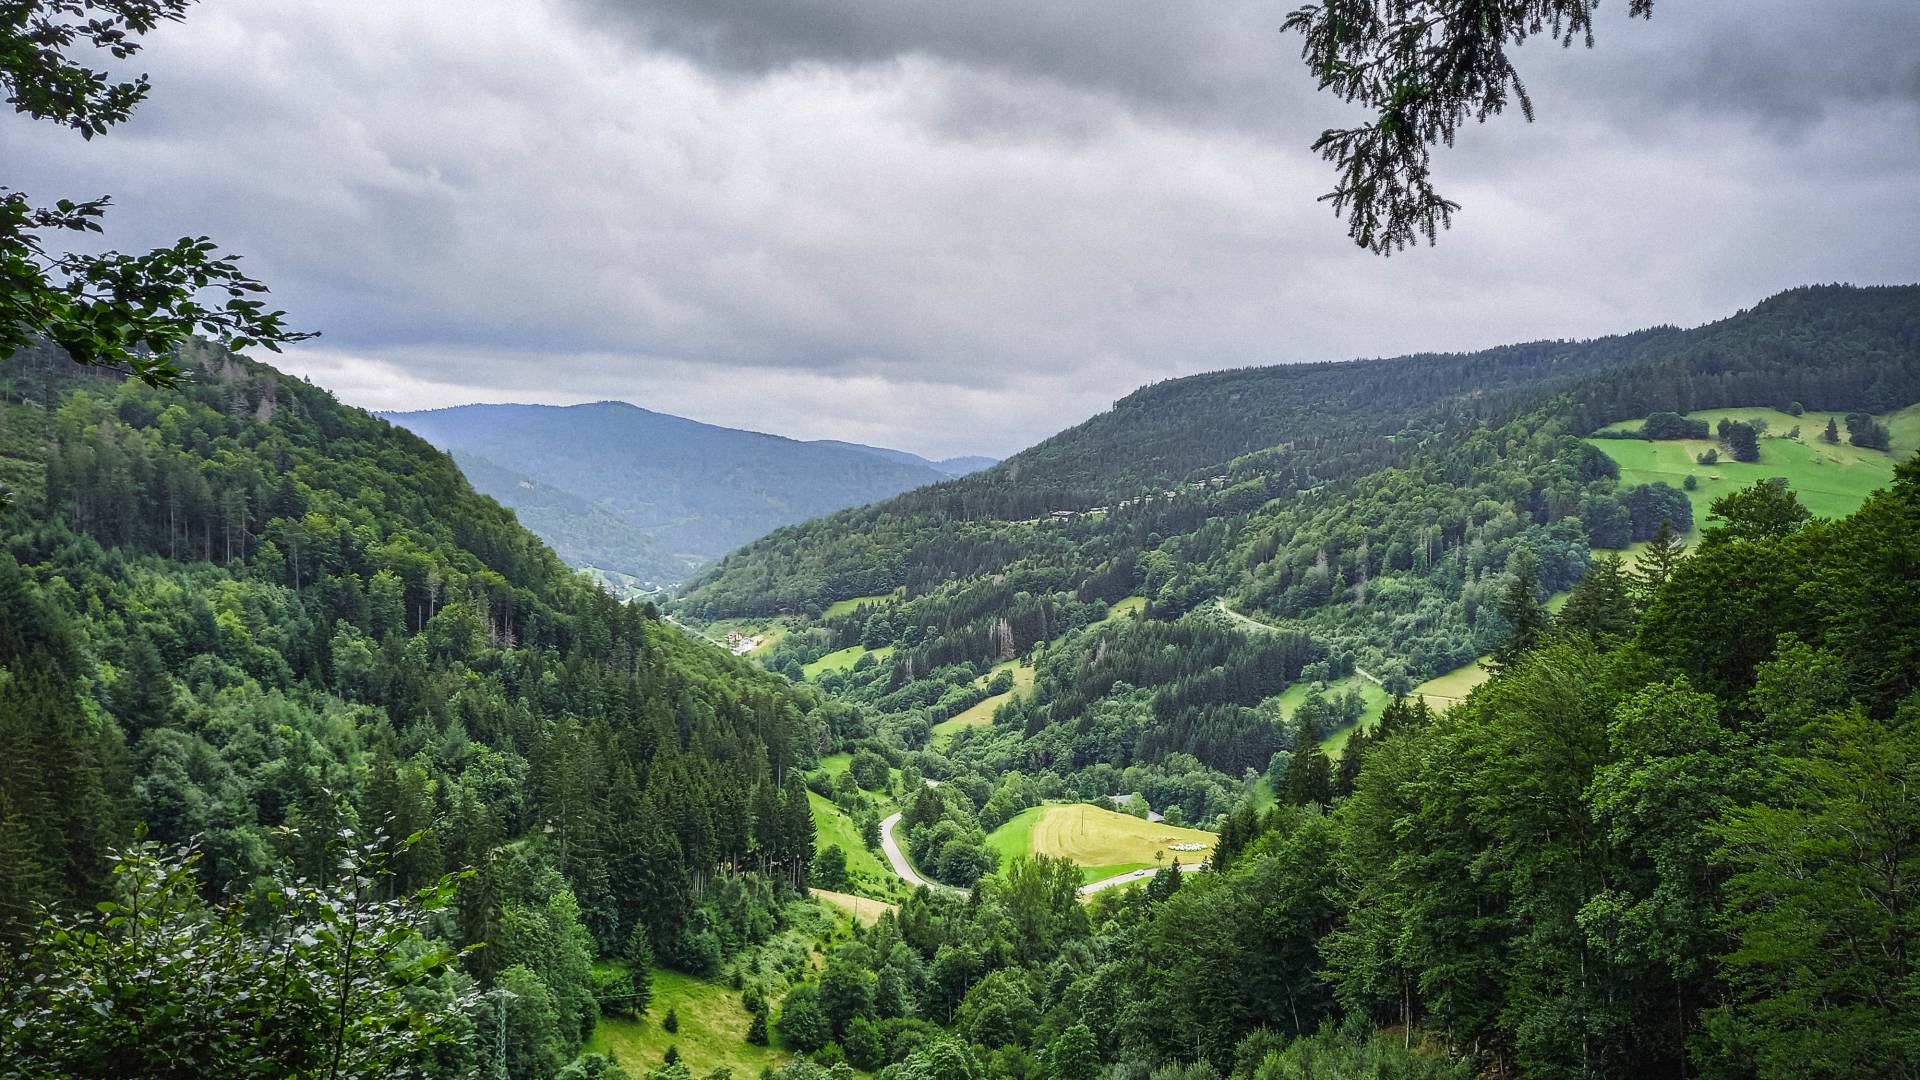 Urlaub im Schwarzwald - Ausblick auf den Südschwarzwald